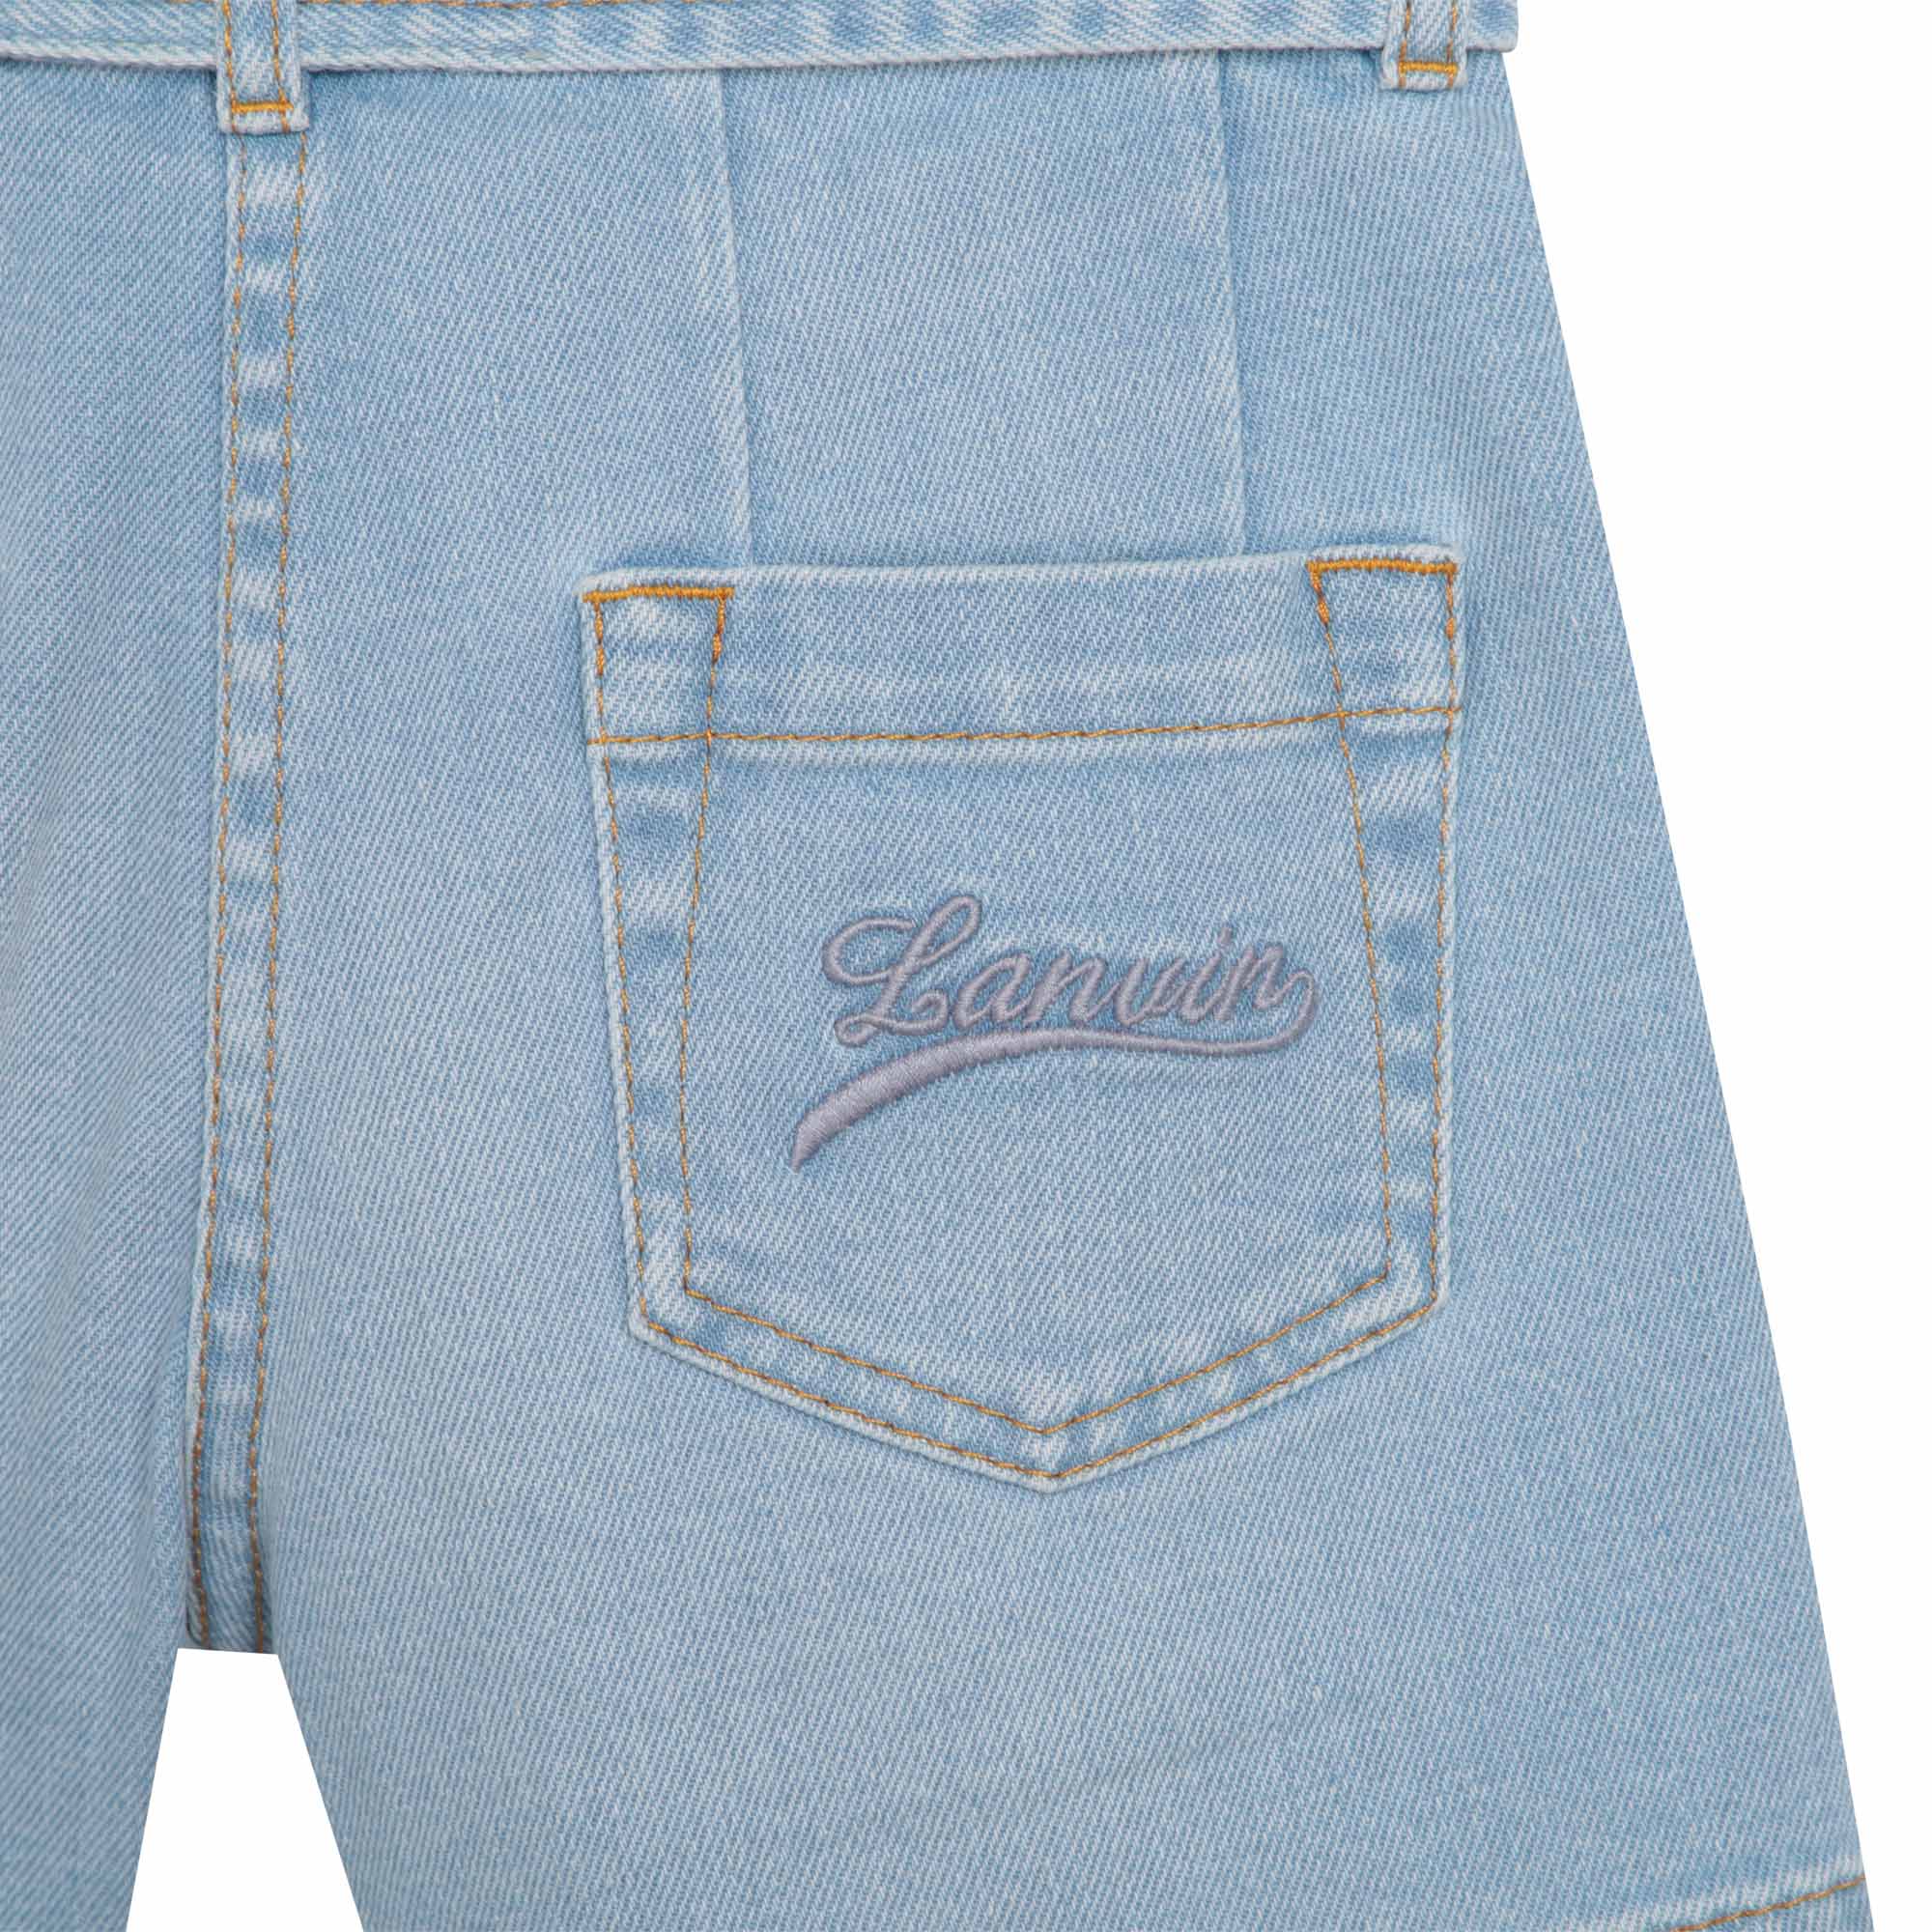 Jeans-Shorts mit Gürtel LANVIN Für MÄDCHEN